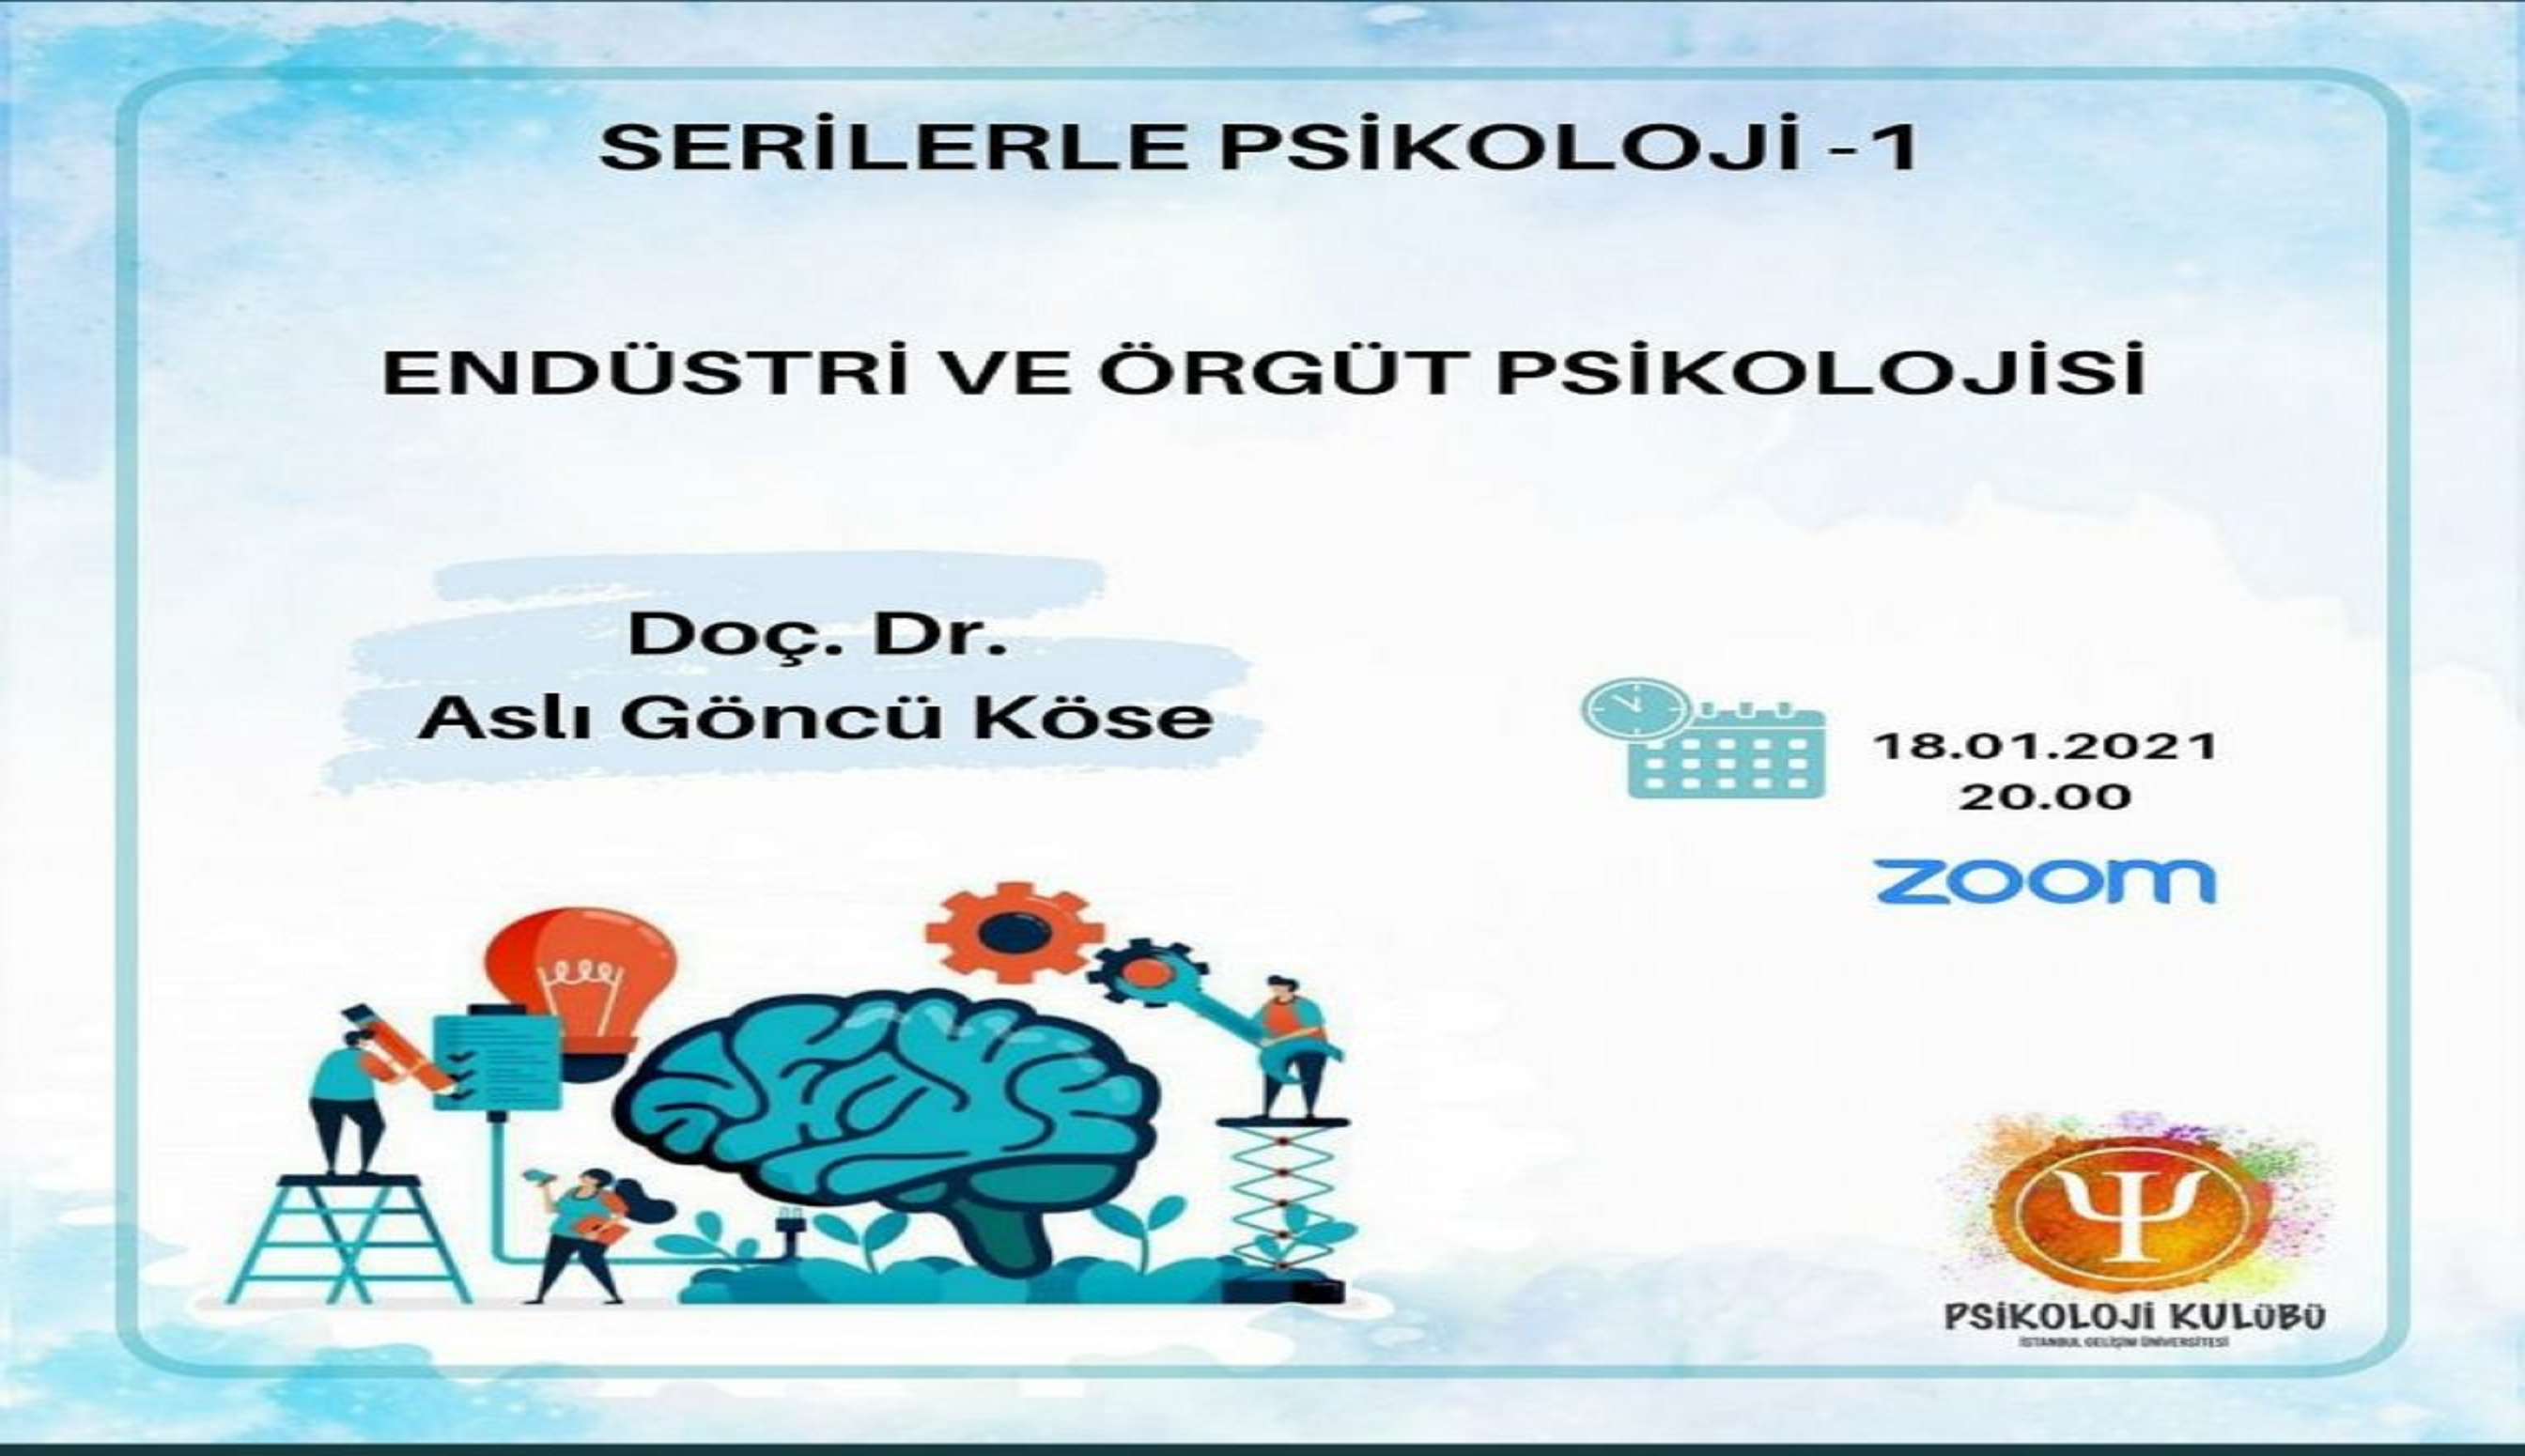 İstanbul Gelişim Üniversitesi Psikoloji Kulübü’nün Düzenlediği Serilerle Psikoloji-1 Etkinliği